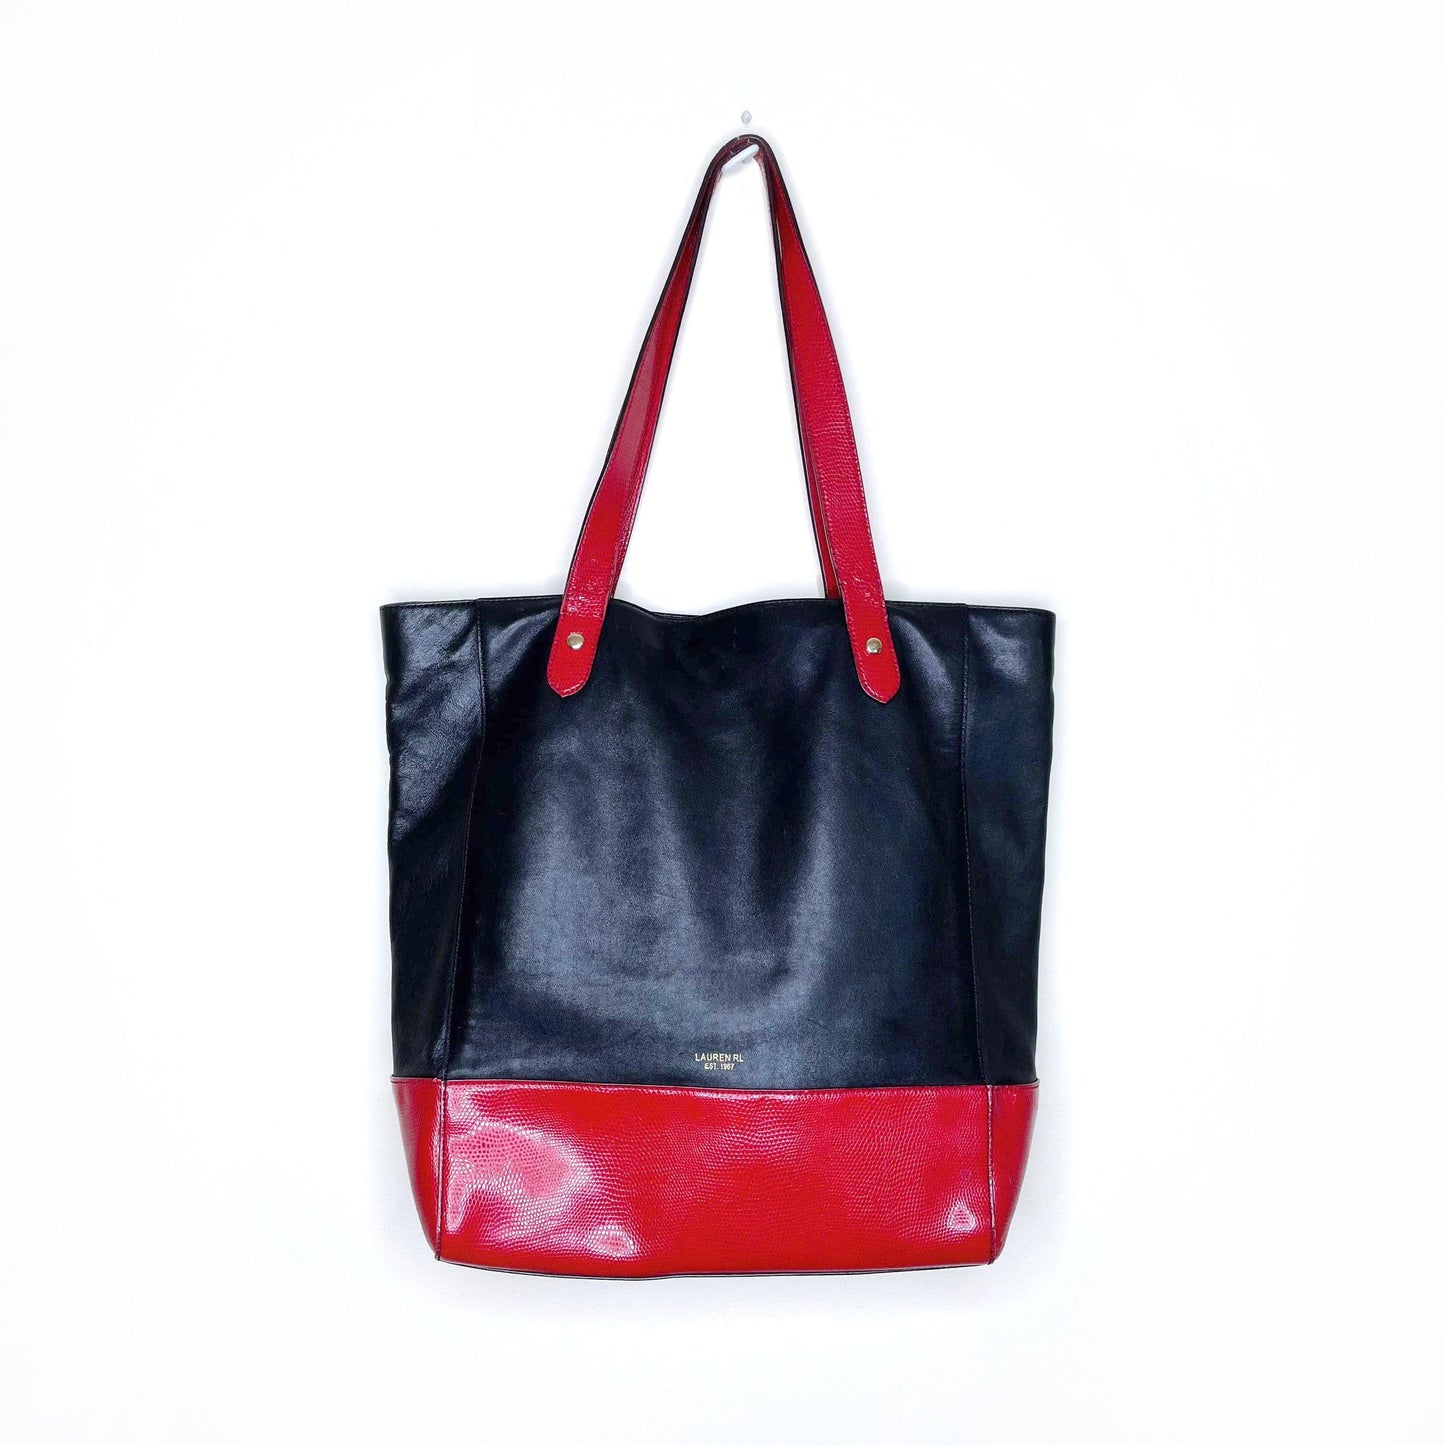 lauren ralph lauren black red leather tote bag